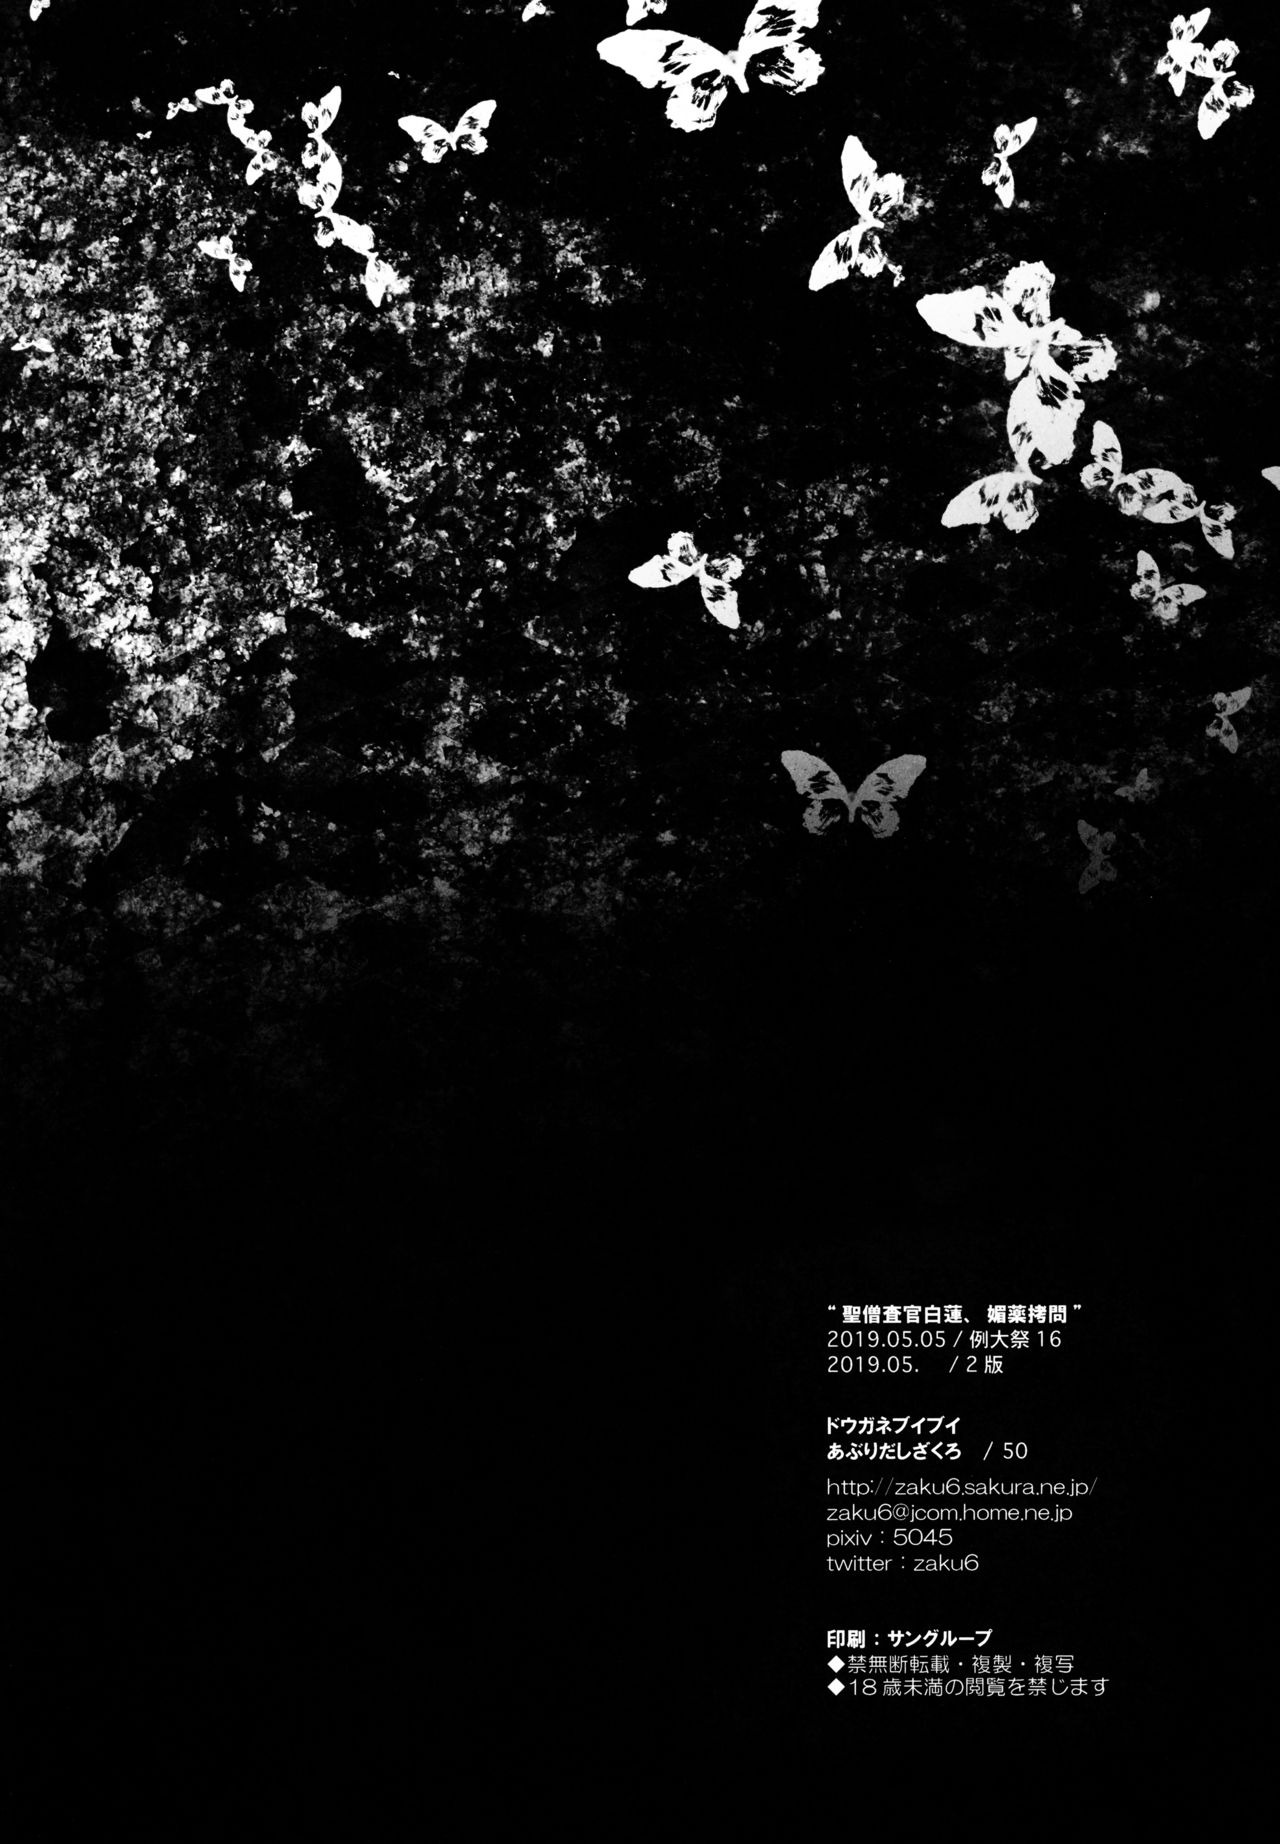 [ドウガネブイブイ (あぶりだしざくろ)] 聖僧査官白蓮、媚薬拷問 (東方Project) [2019年5月]